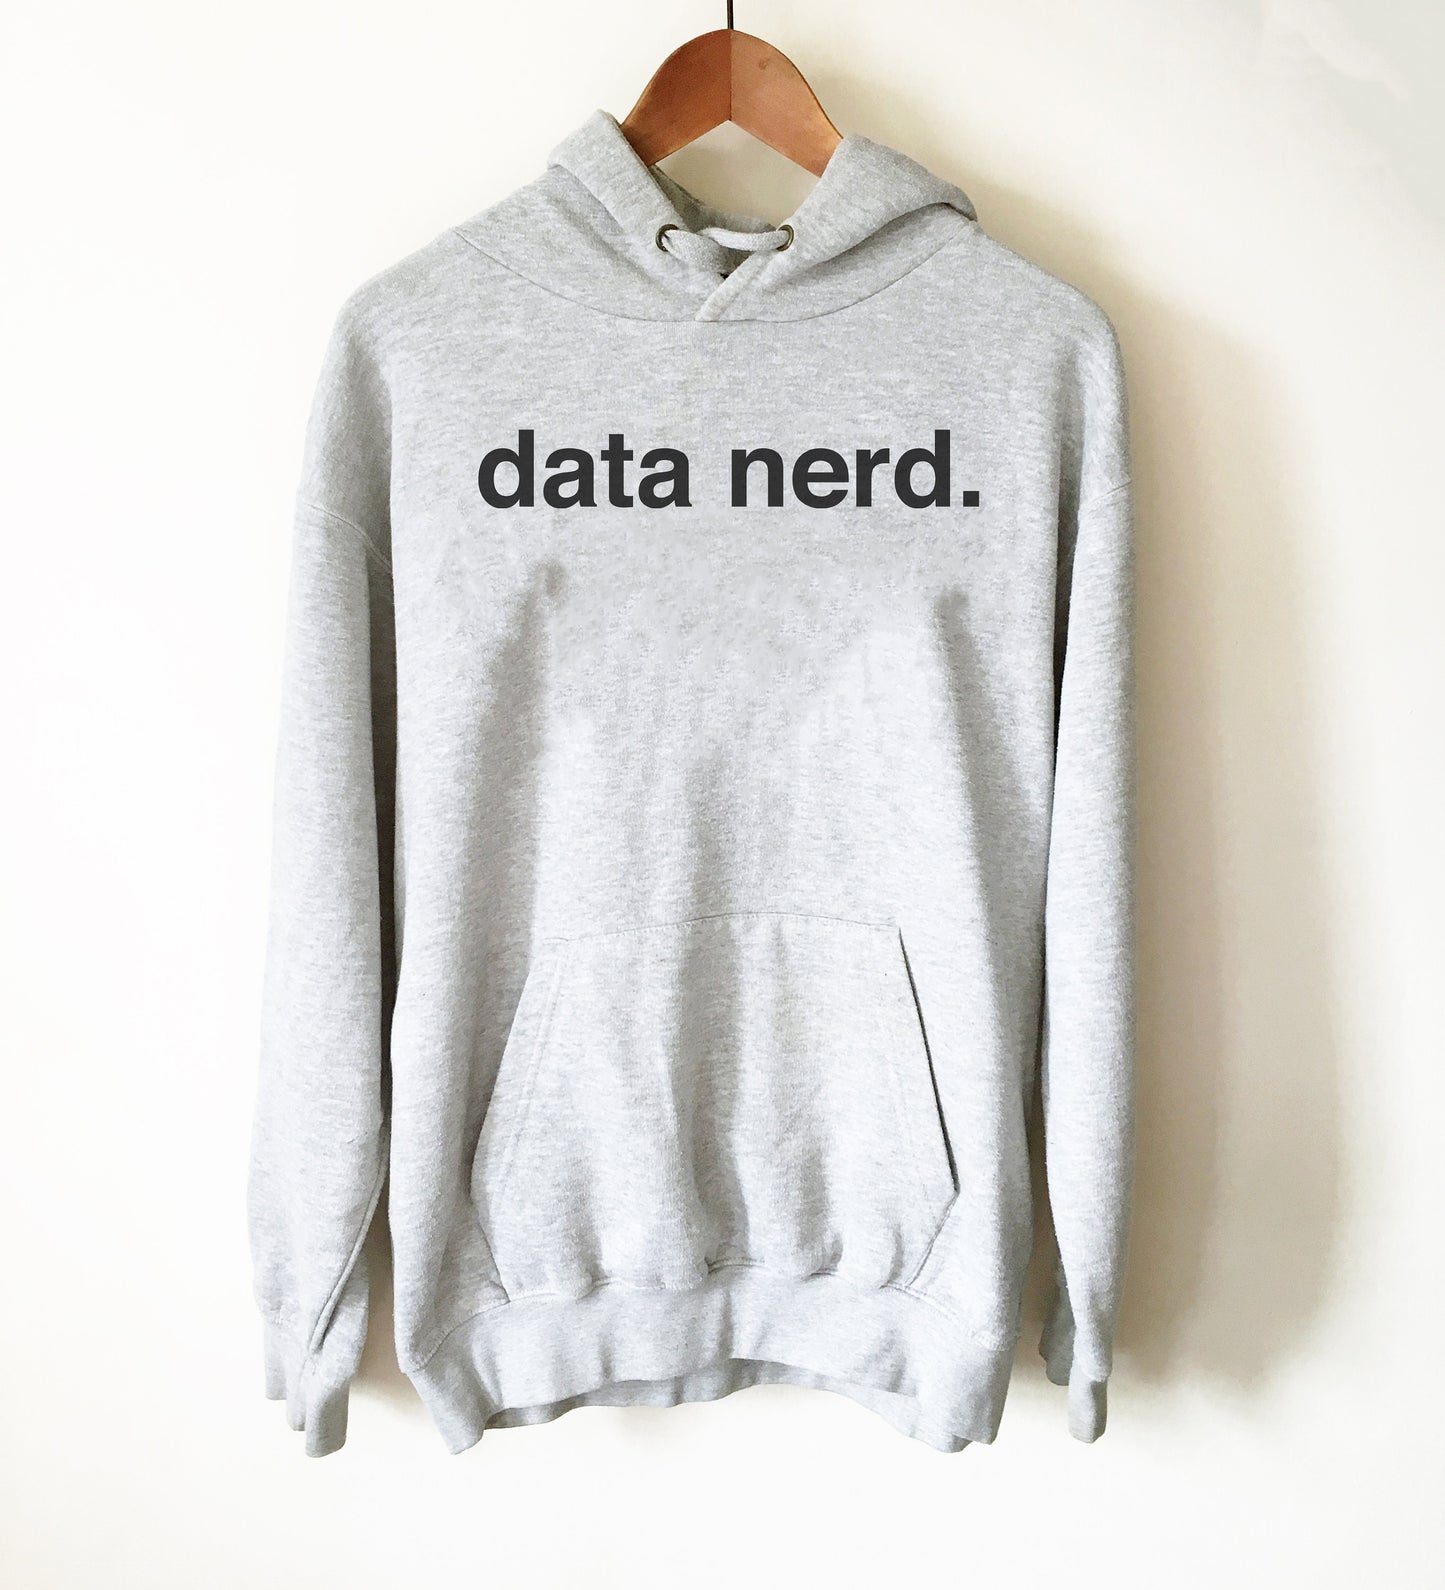 Data Nerd Hoodie - Data Analyst Shirt, Data Analyst Gift, Analyst Shirt, Data Scientist Gift, Computer Science Gift, Data Shirt, Nerd Shirt